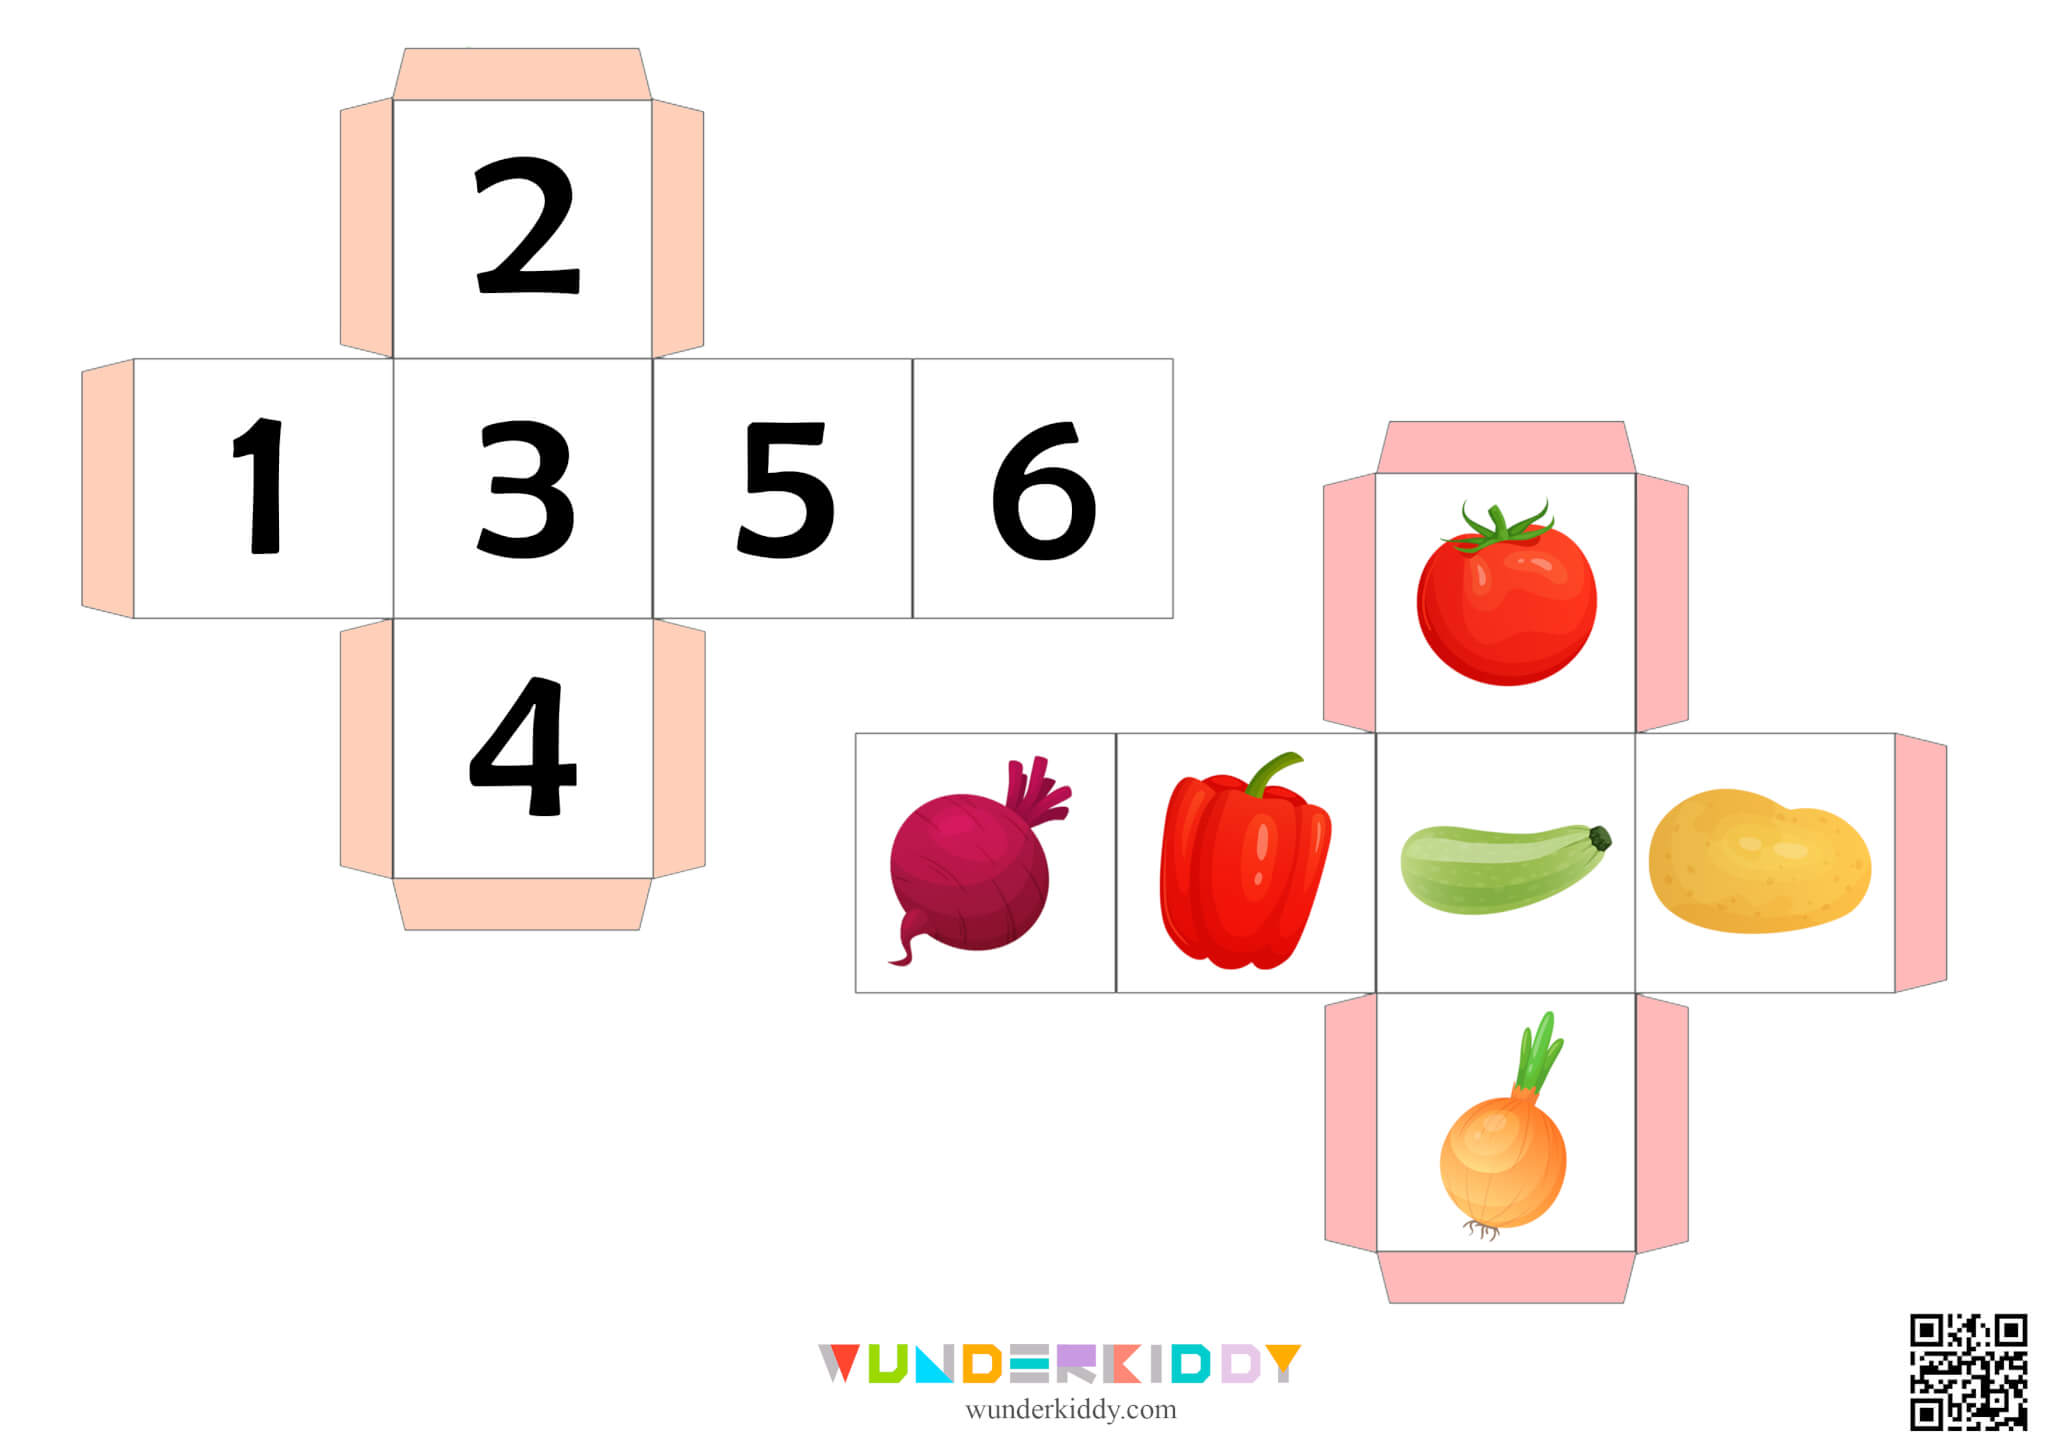 Math Dice Game for Kids Basket of Vegetables - Image 2